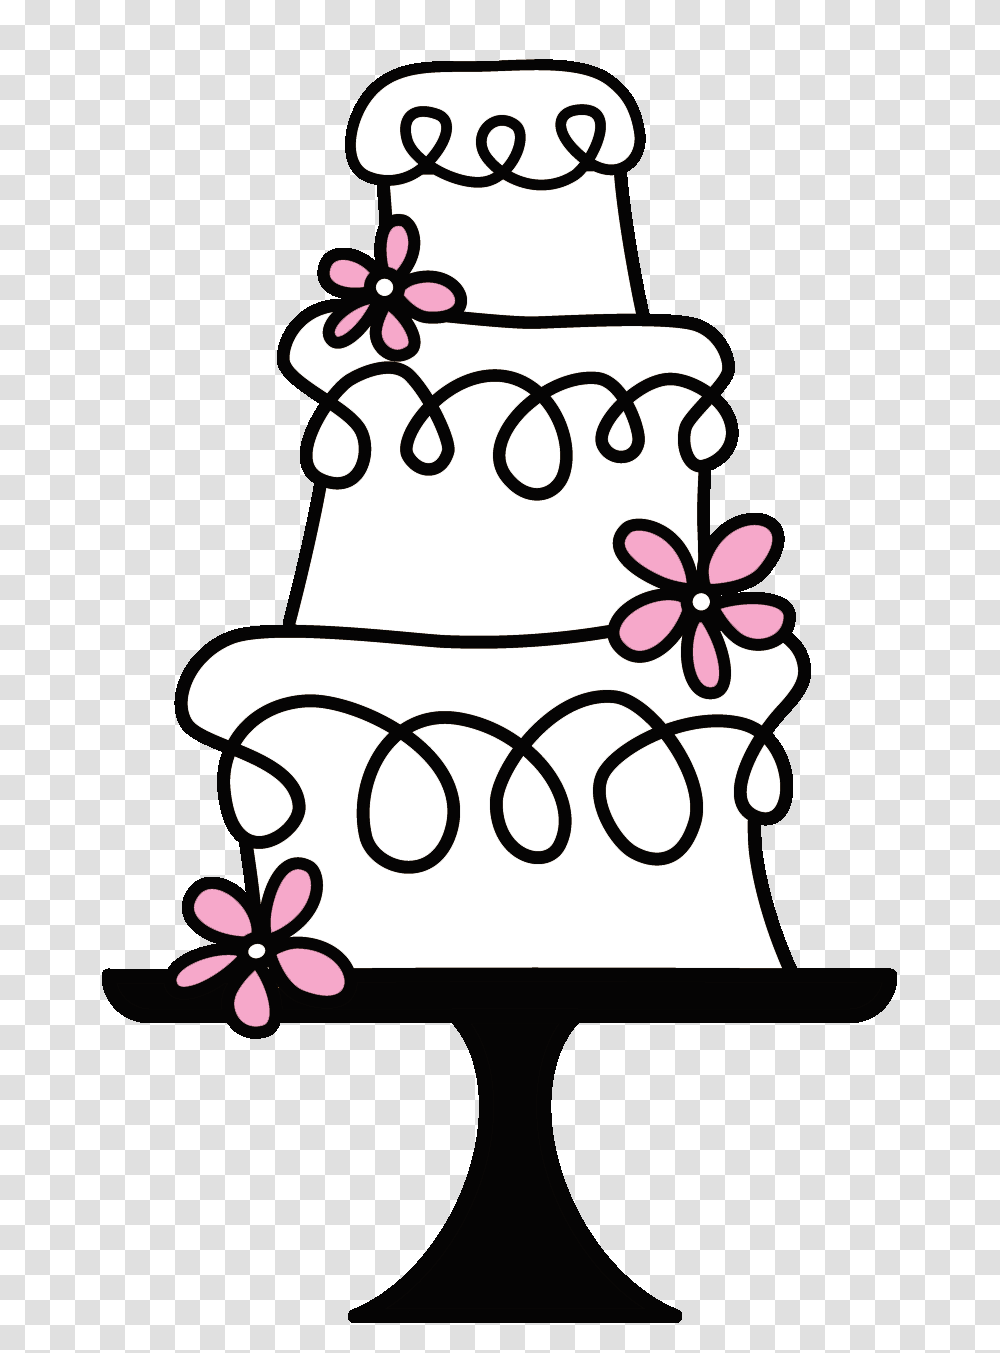 Logo Wedding Cake Logos Cake Cake Stock And Cake, Gift, Birthday Cake, Dessert, Food Transparent Png